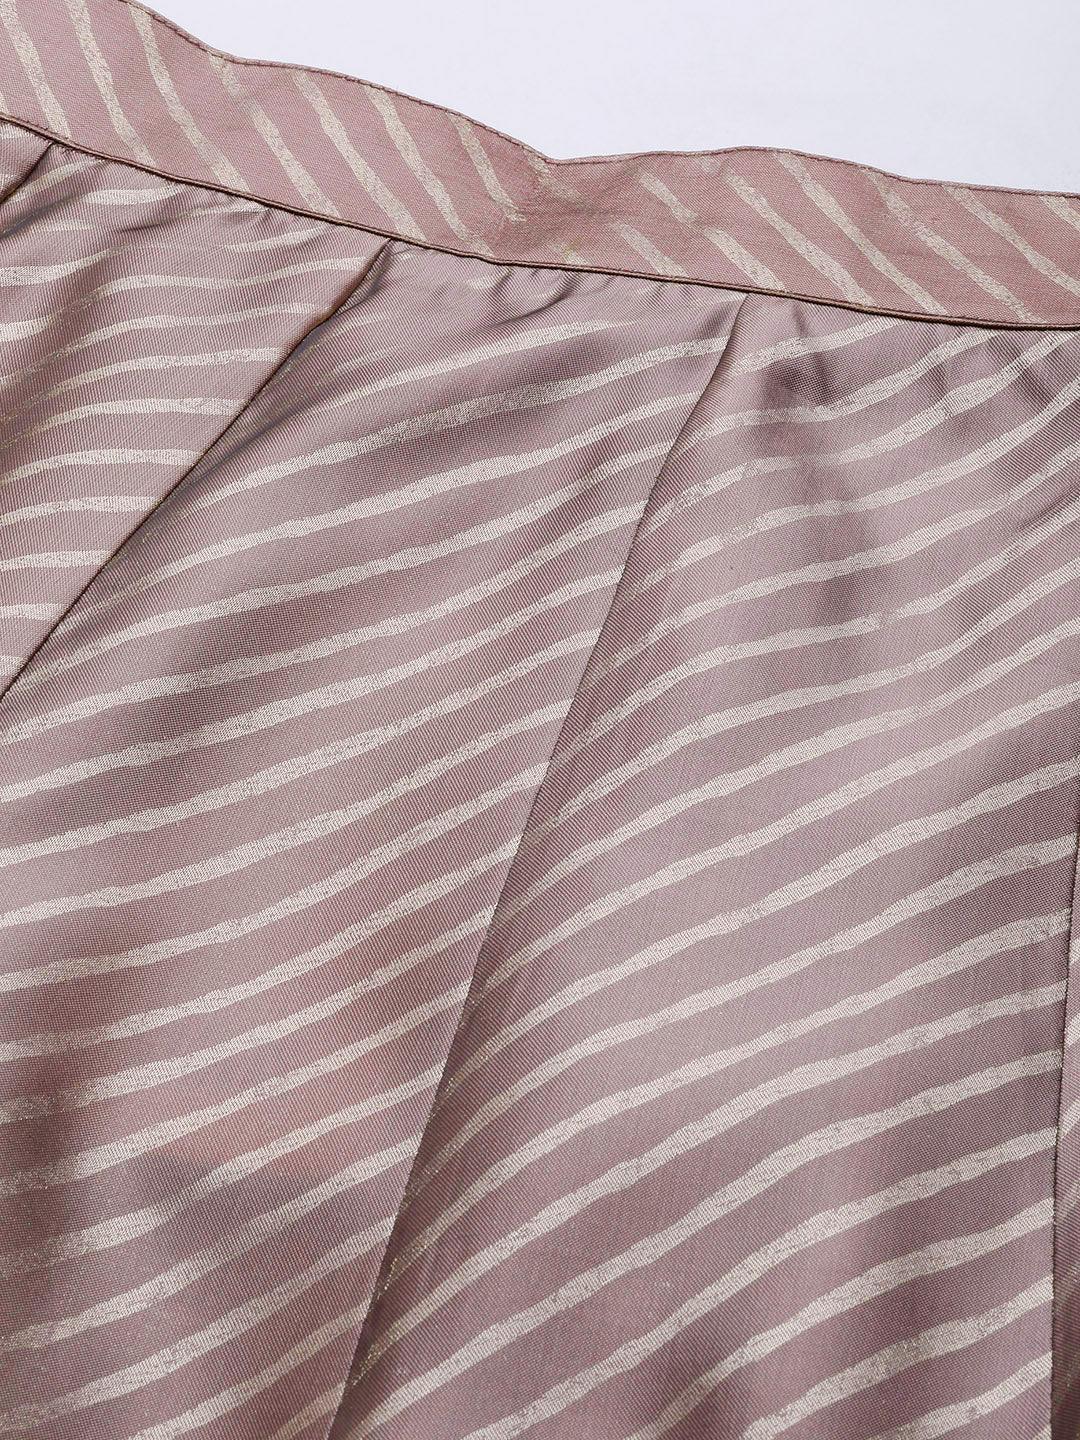 Mauve Printed Silk Blend Skirt